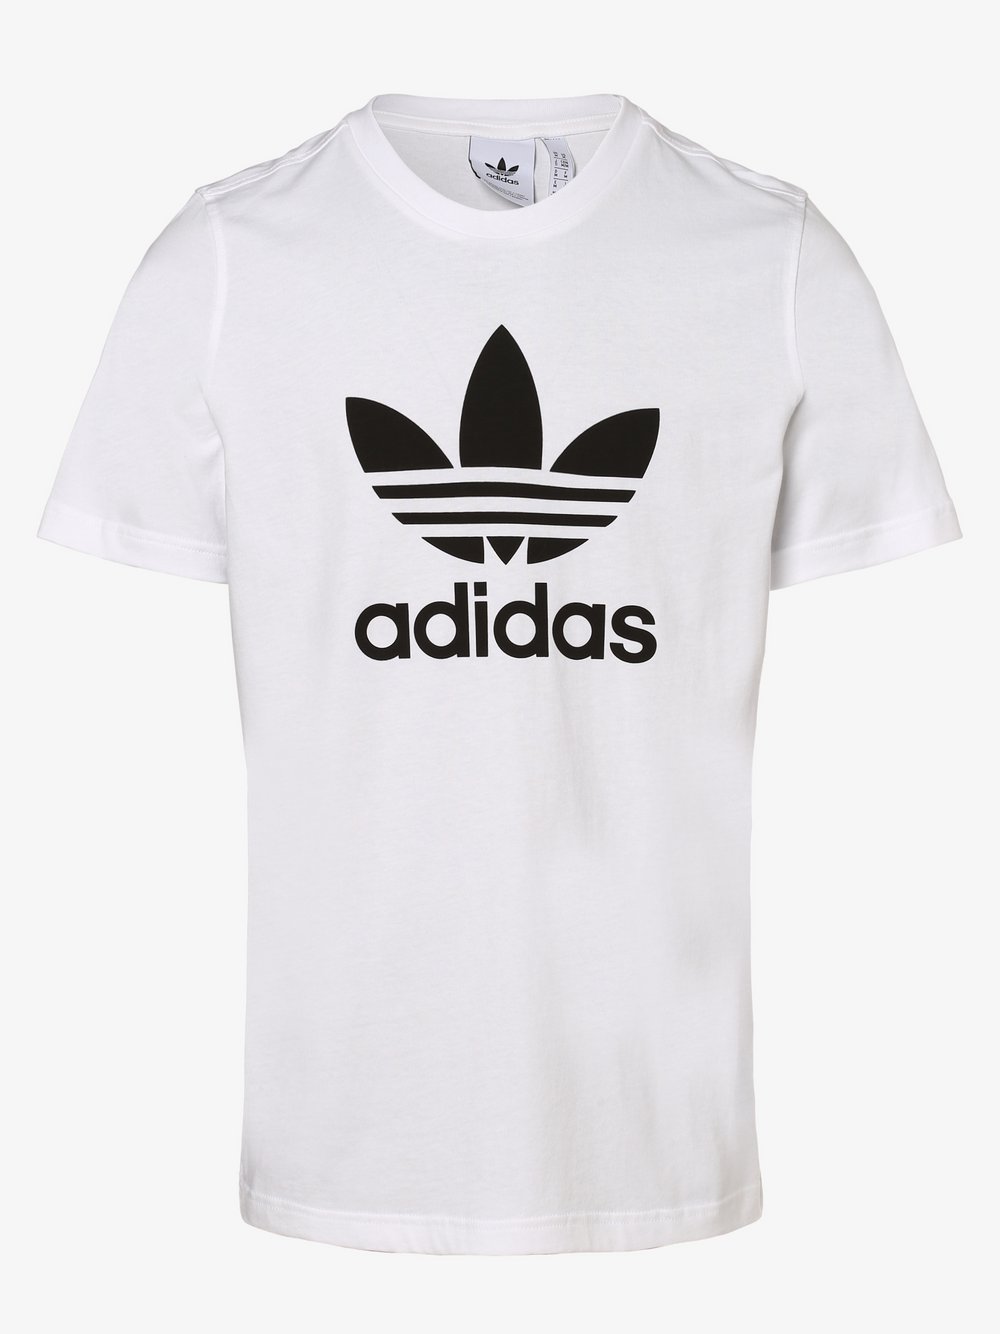 adidas Originals - T-shirt męski, biały